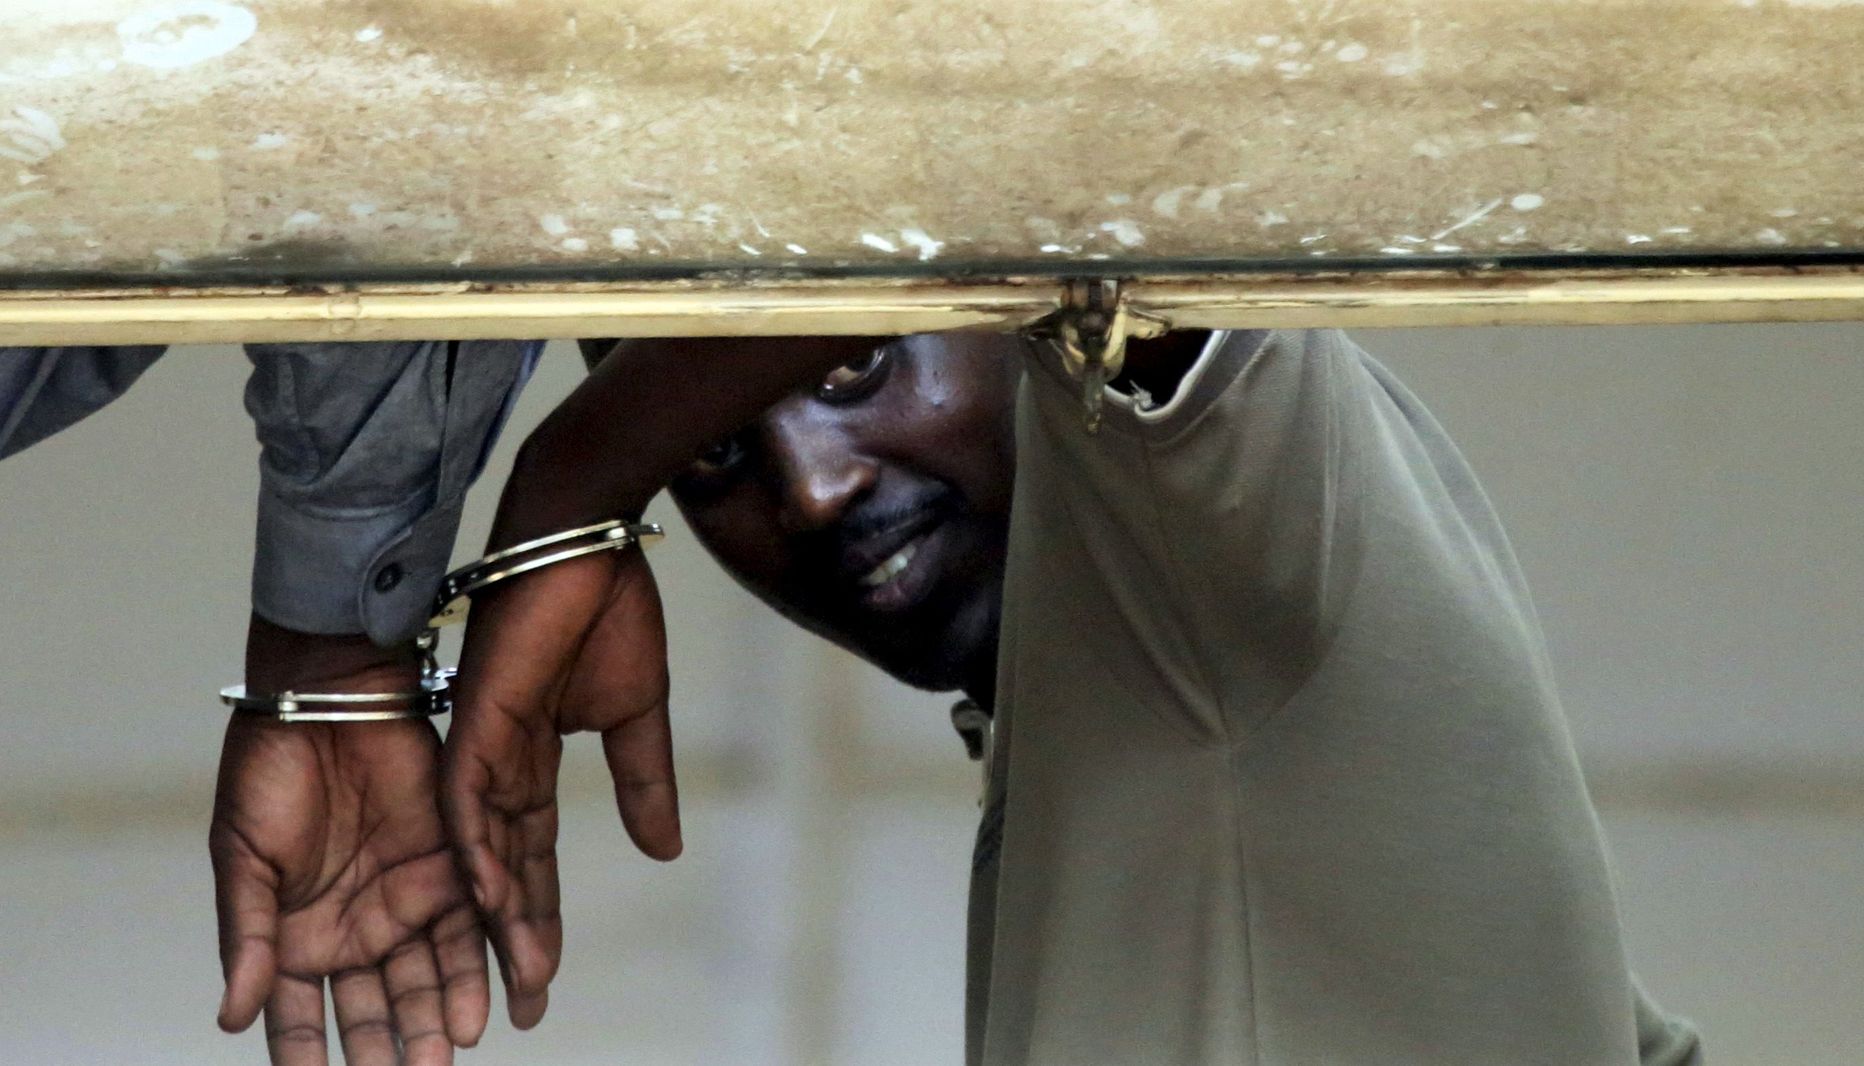 Pildil kaks burundi meest käeraudades süüdistatuna riigpöördekatses osalemises